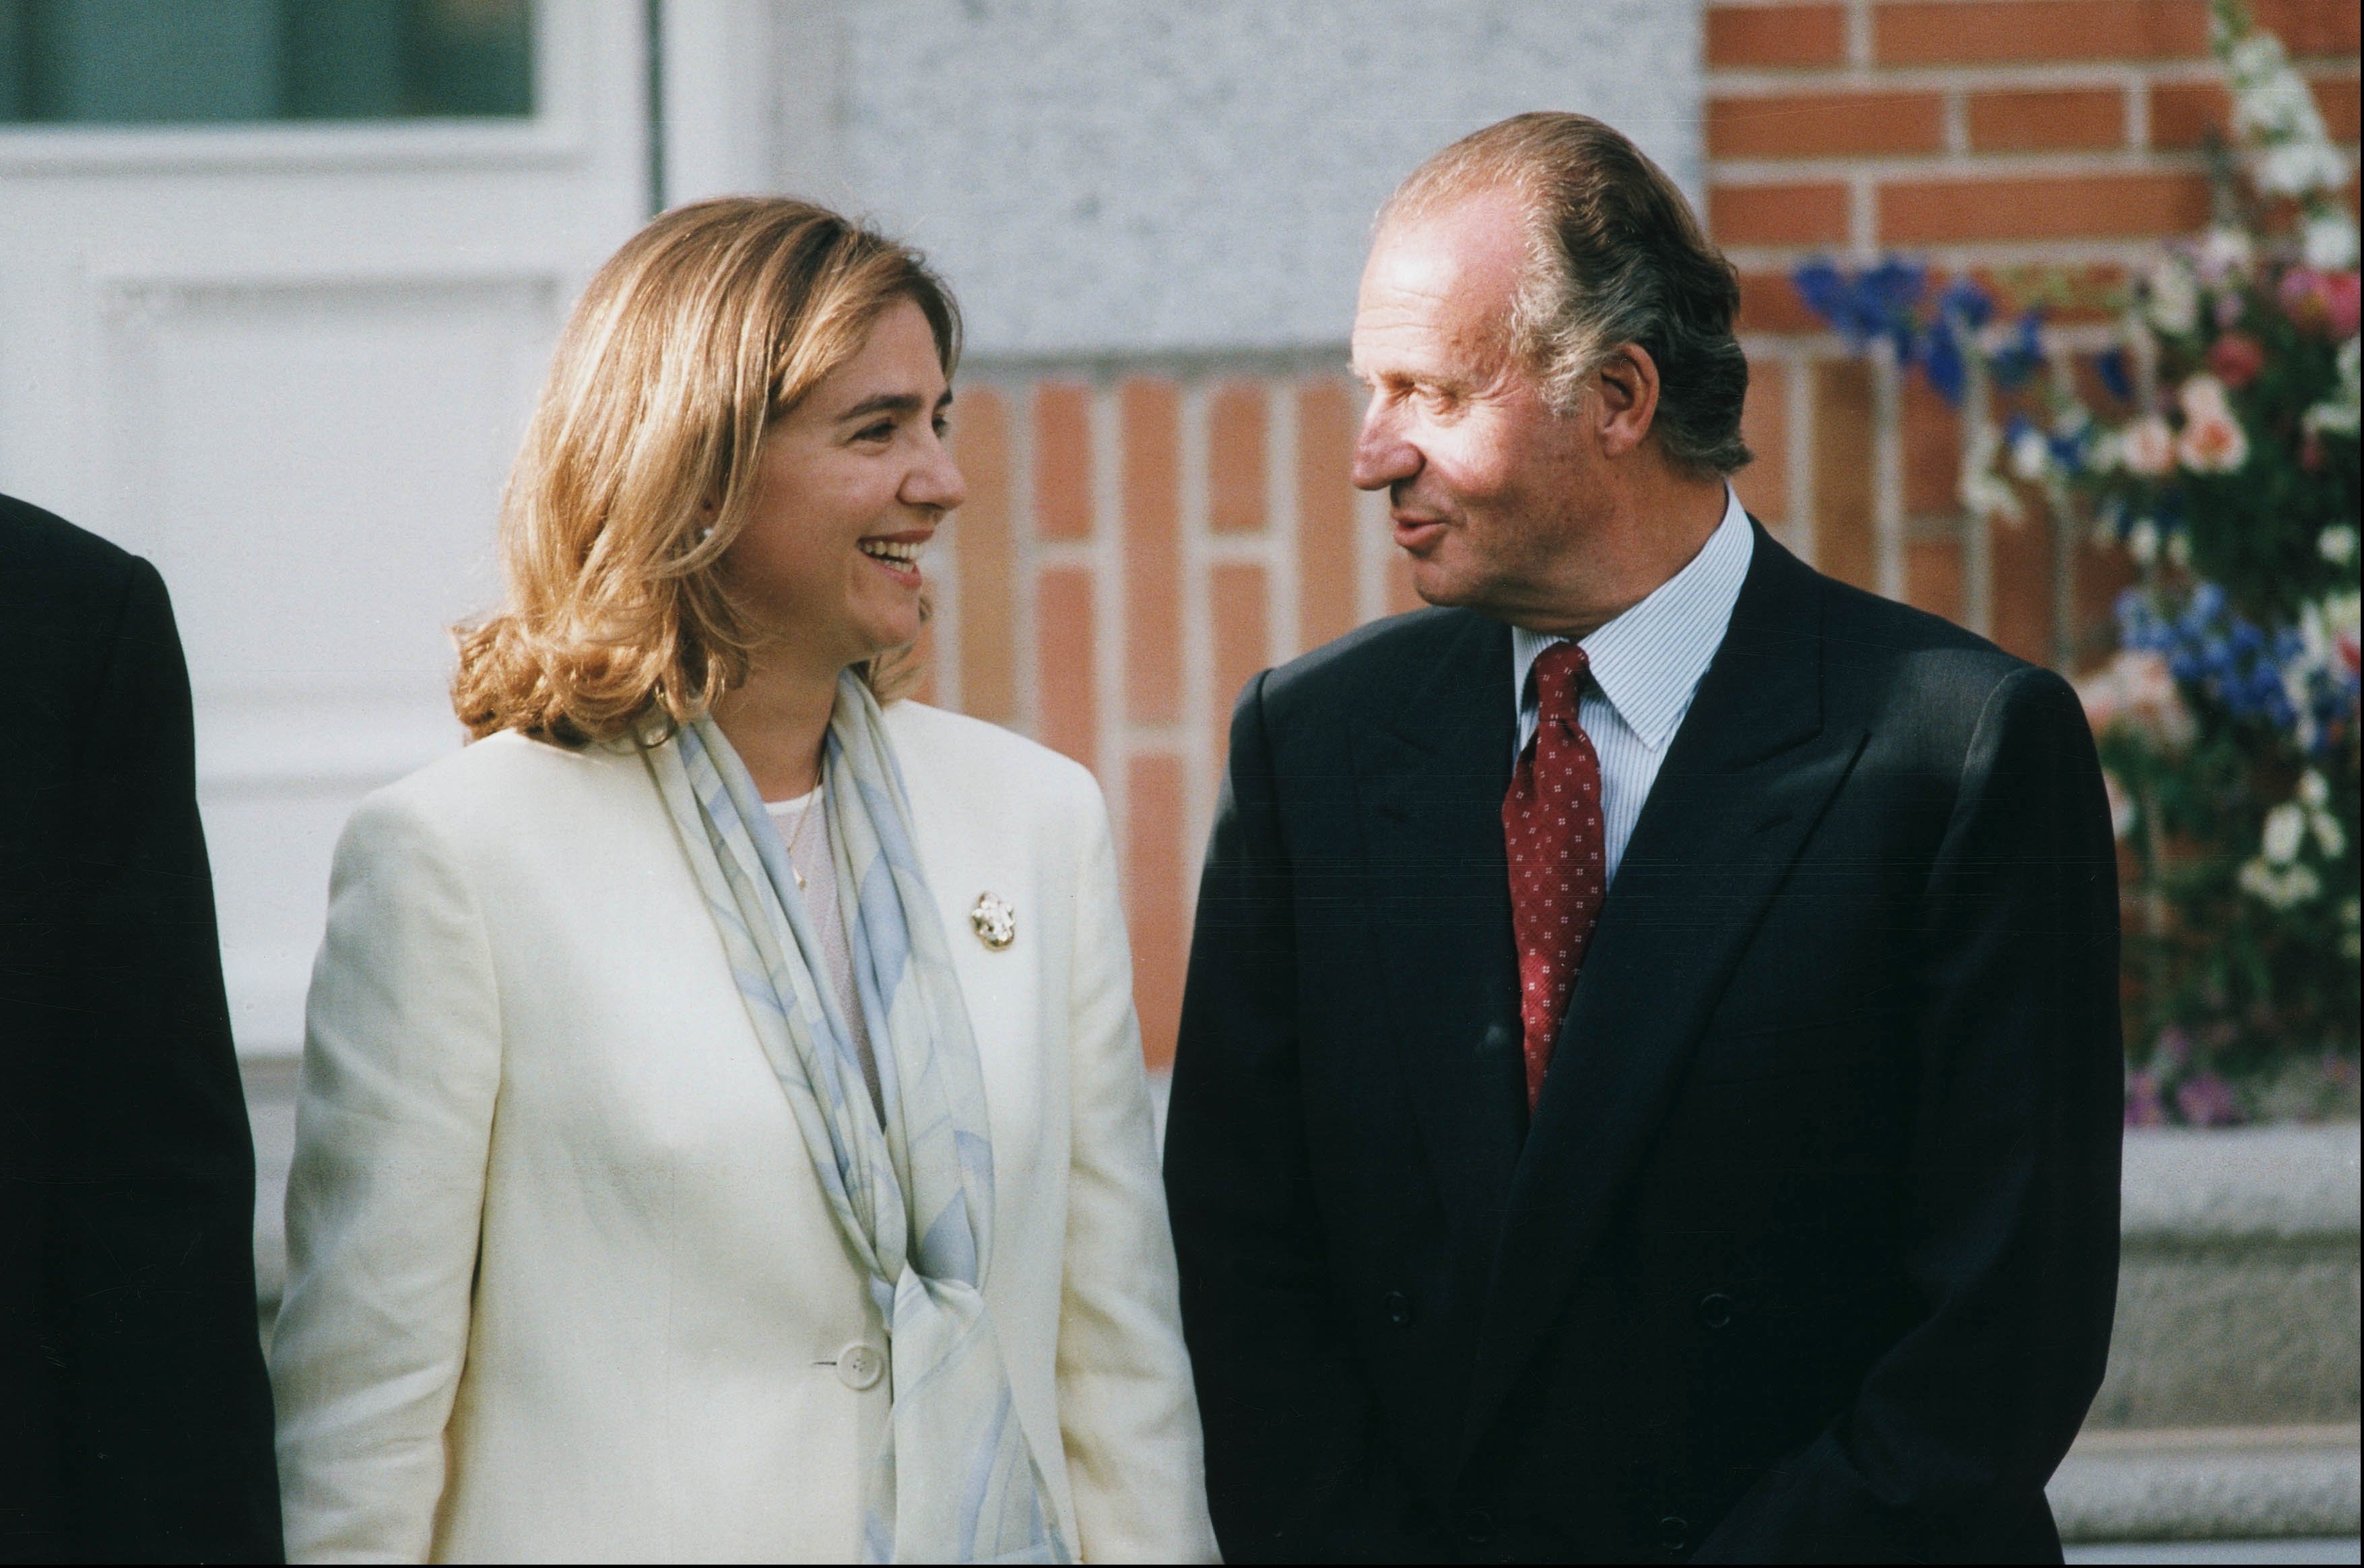 La infanta Cristina y el rey Juan Carlos el día del compromiso de ella con Iñaki Urdangarin en Madrid, el 3 de mayo de 1997. | Foto: Getty Images